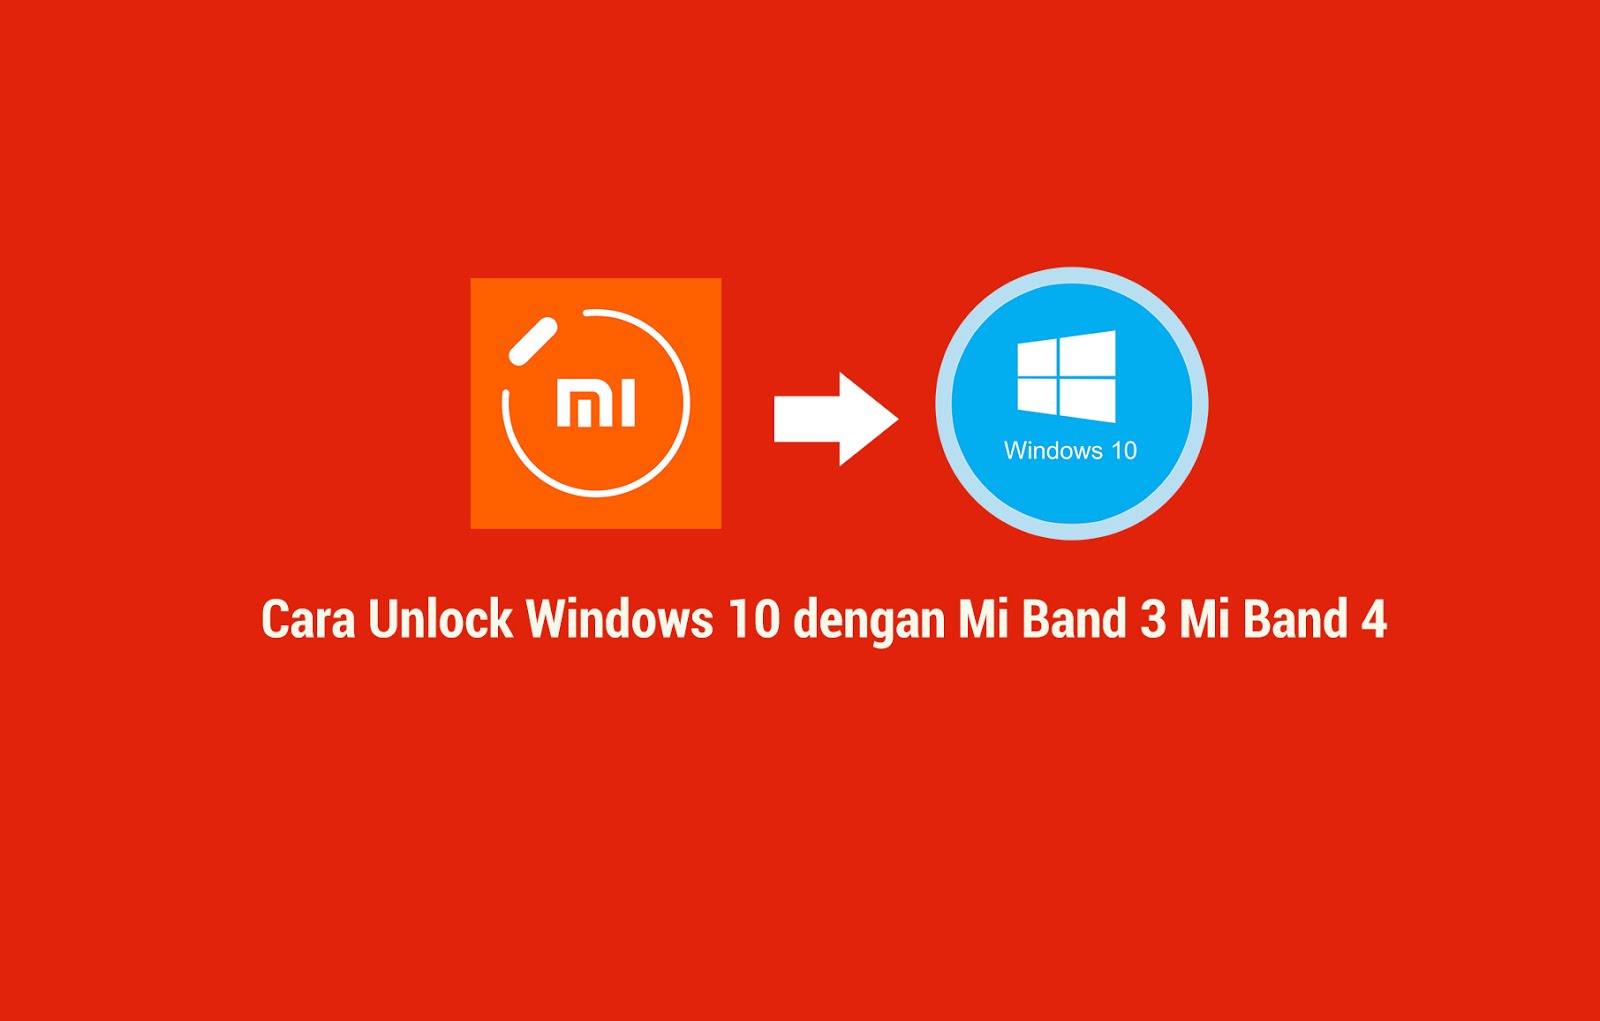 Cara Unlock Windows 10 dengan Mi band 3 dan Mi band 4